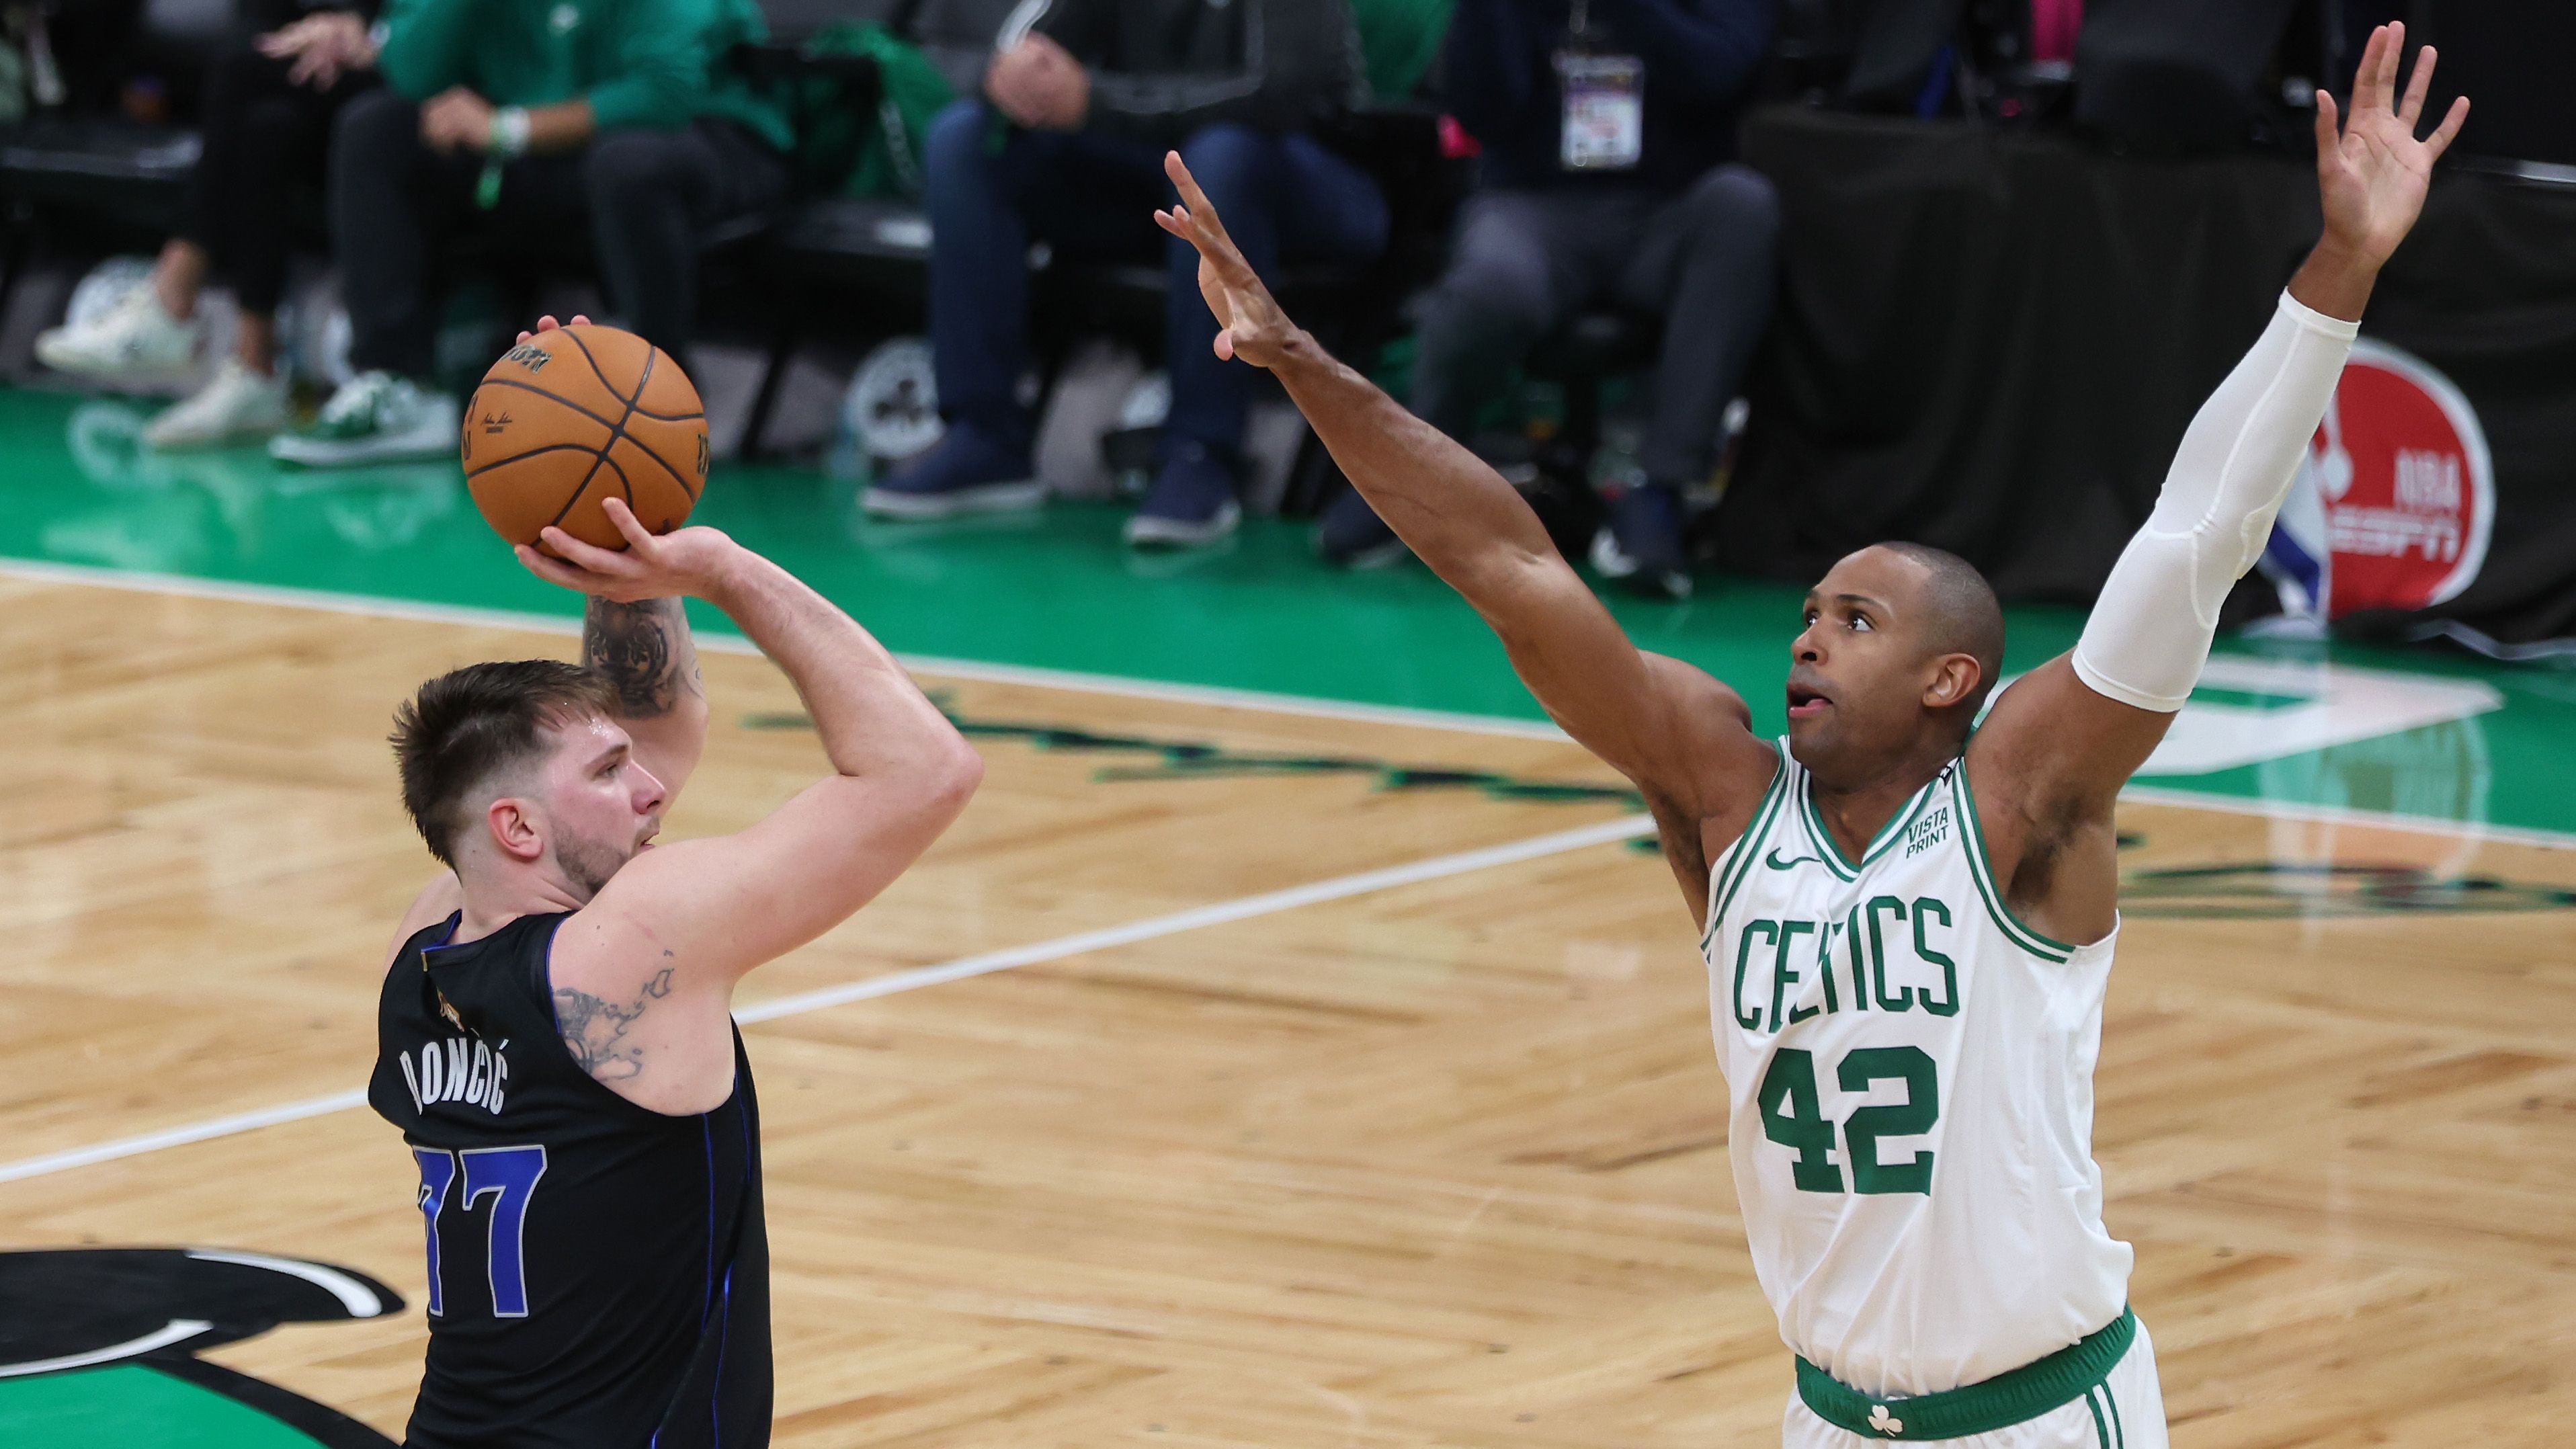 Defensiv zeigte Horford in den Playoffs, dass er nicht die prophezeite Schwachstelle der Celtics-Defense ist. Ob als Help-Defender oder in einem direkten Matchup - er ist stets zur Stelle, wenn er gebraucht wird. Offensiv dehnt er zudem das Spielfeld und schafft so Platz in der Zone für seine Mitspieler.